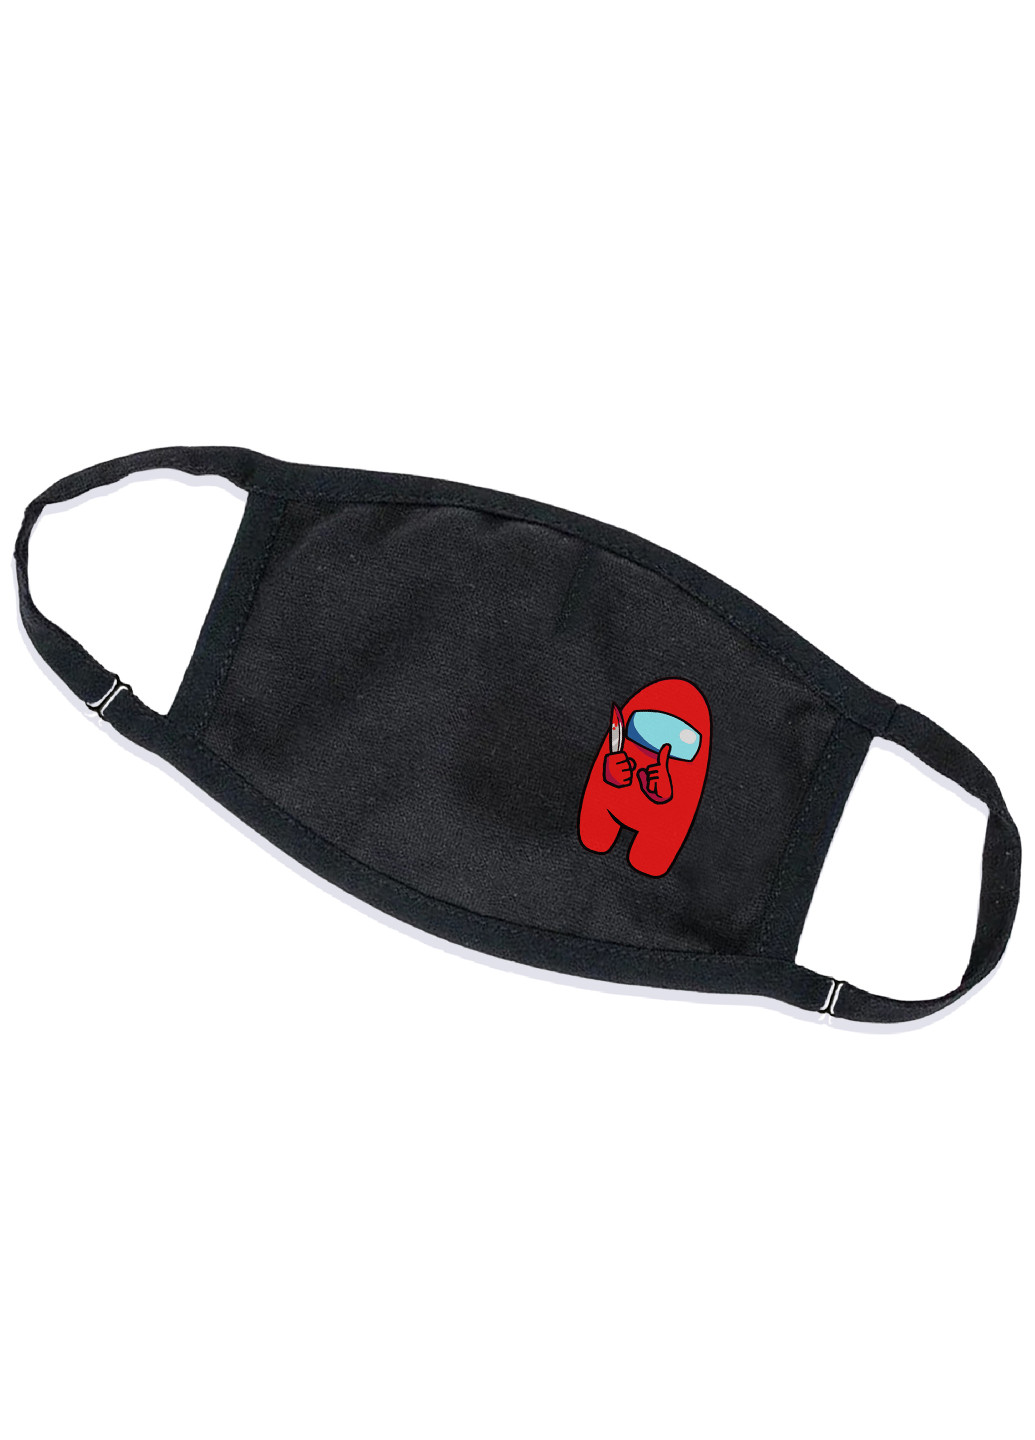 Многоразовая защитная маска Амонг Ас Красный (Among Us Red) (9259-2417-M) M тканевая для детей и взрослых MobiPrint чёрная